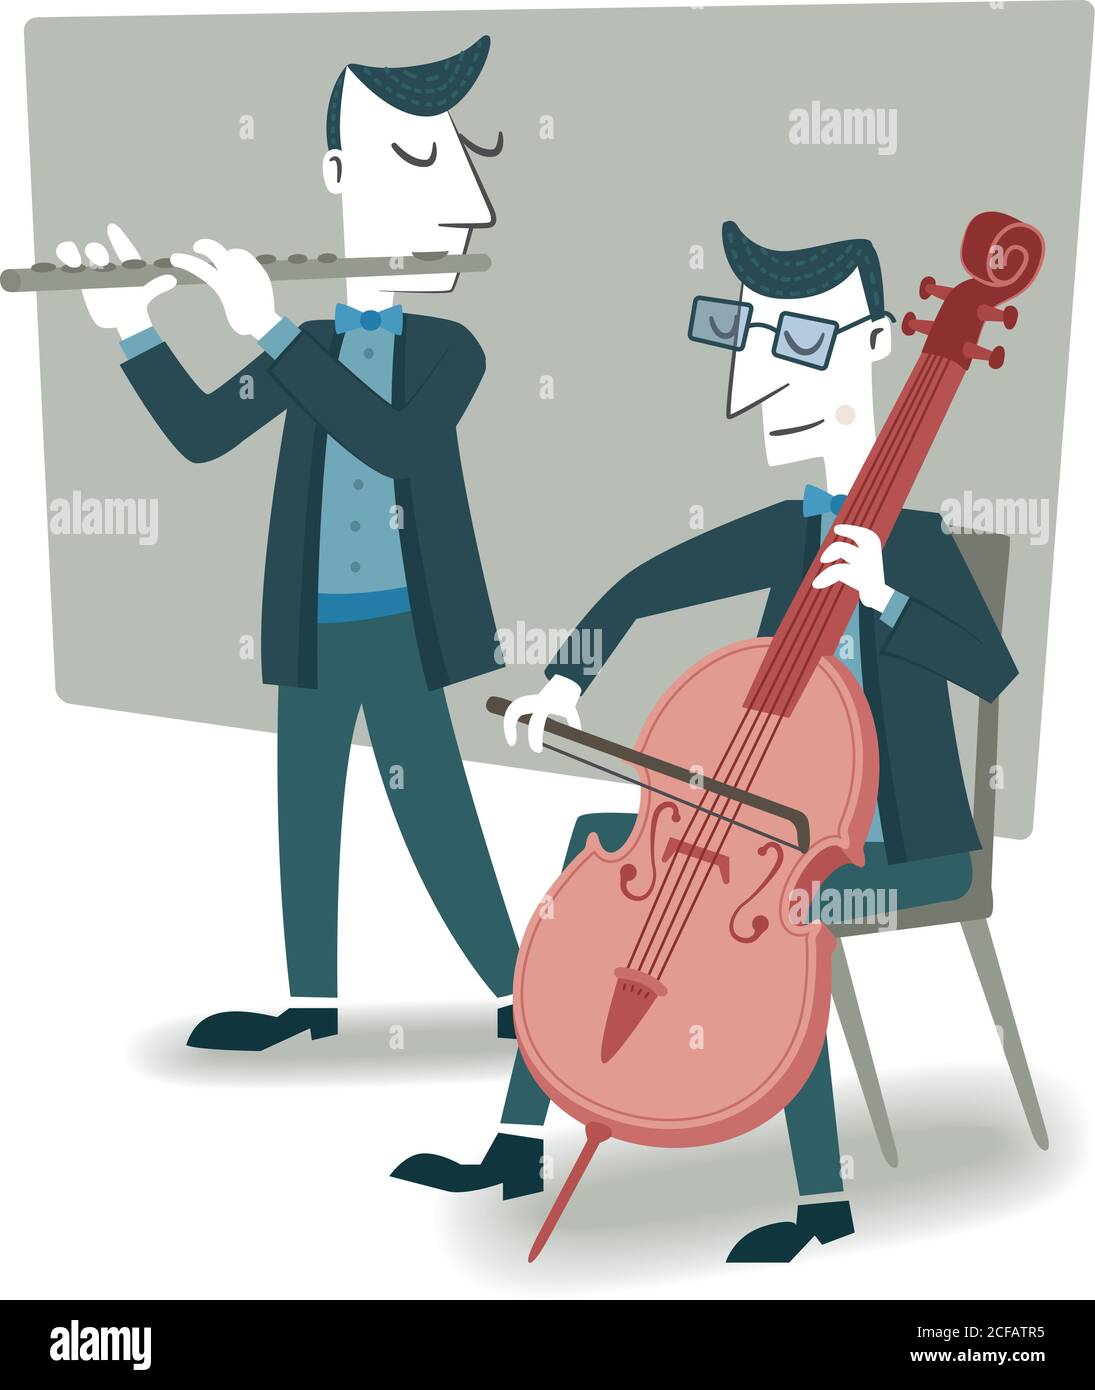 Illustrazione in stile retrò di due musicisti che suonano il violoncello e il flauto. Illustrazione Vettoriale